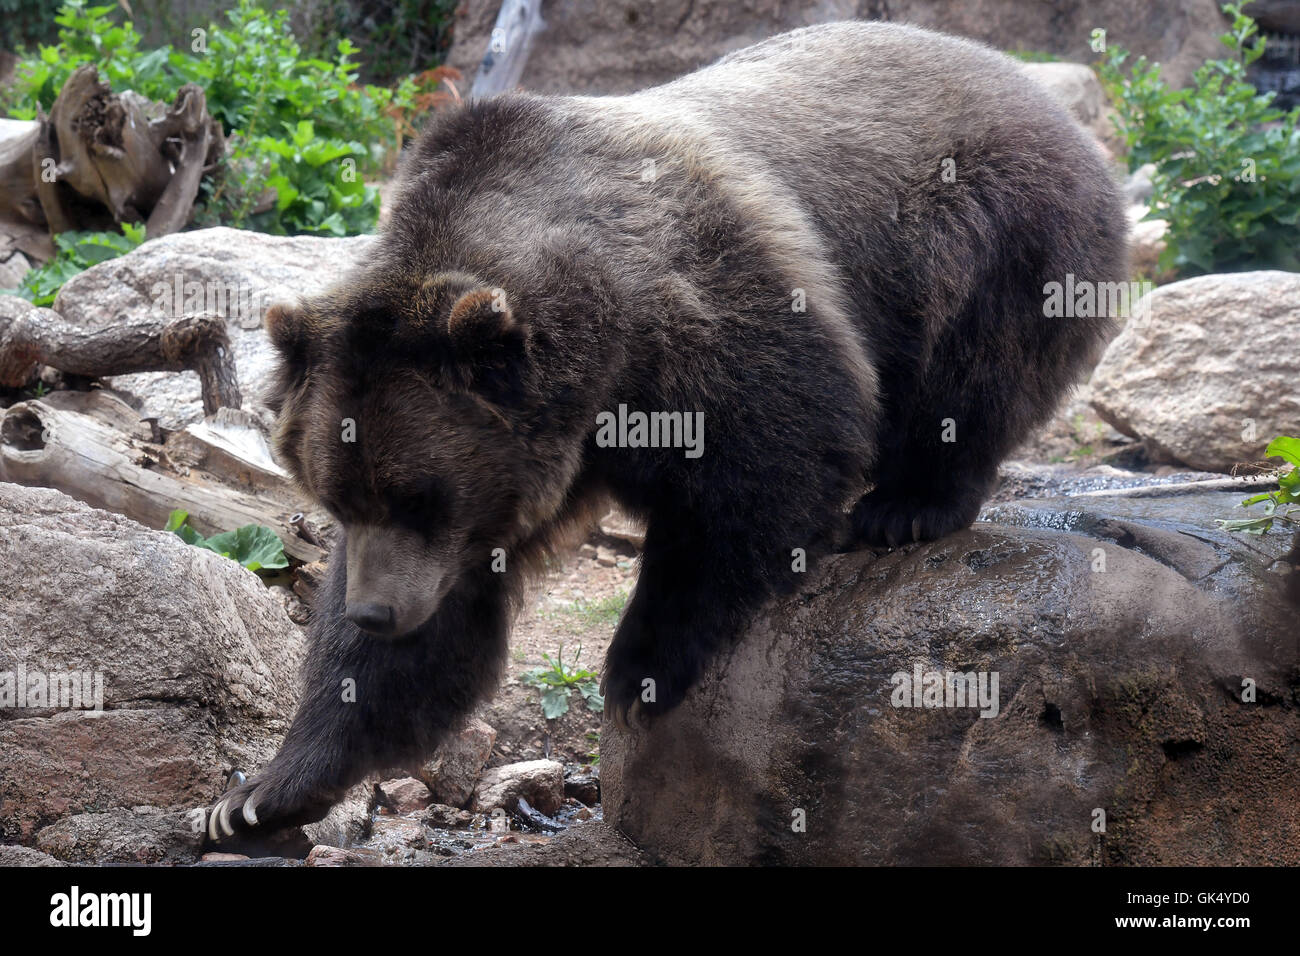 La marche de l'ours grizzli sur terrain rocailleux, dans son environnement naturel Banque D'Images